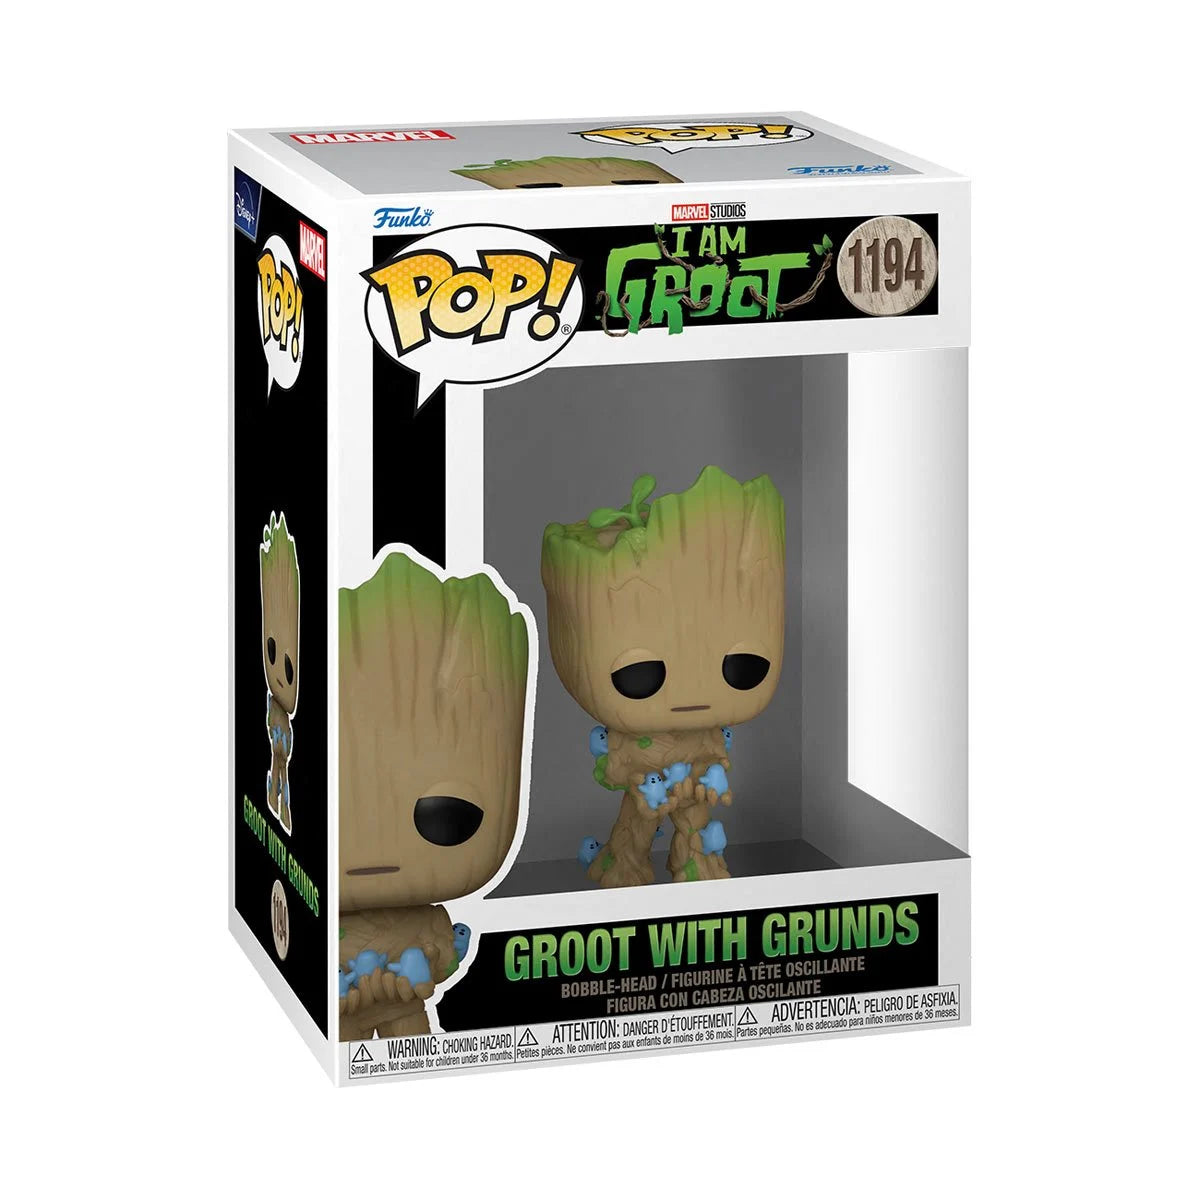 Funko Pop! I Am Groot with Grunds Pop! Vinyl Figure